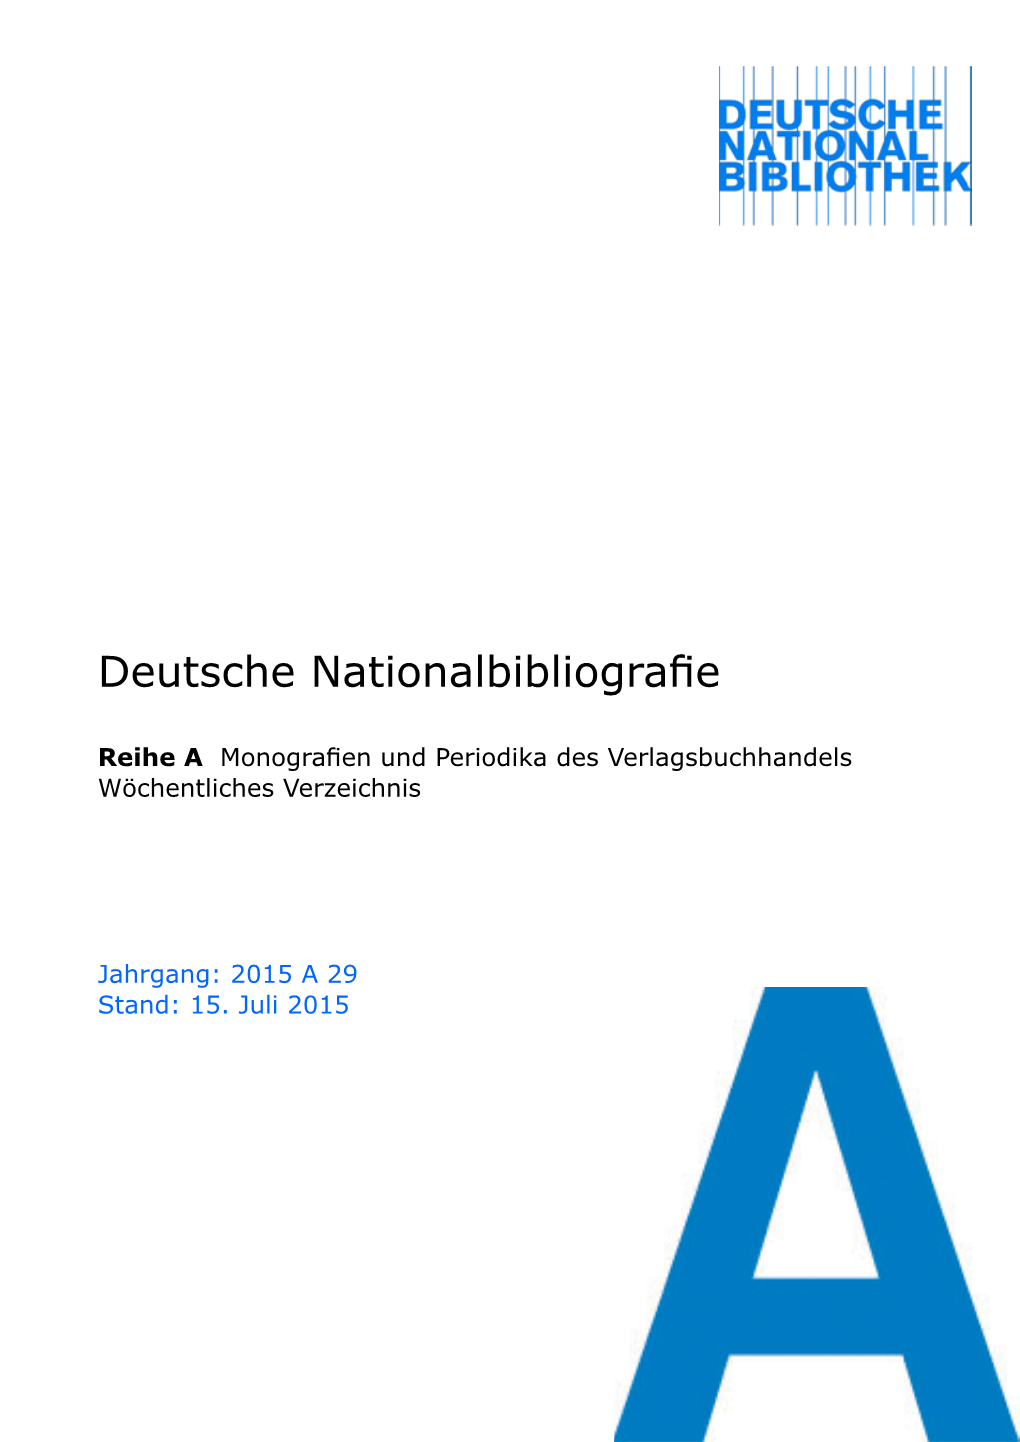 Deutsche Nationalbibliografie 2015 a 29